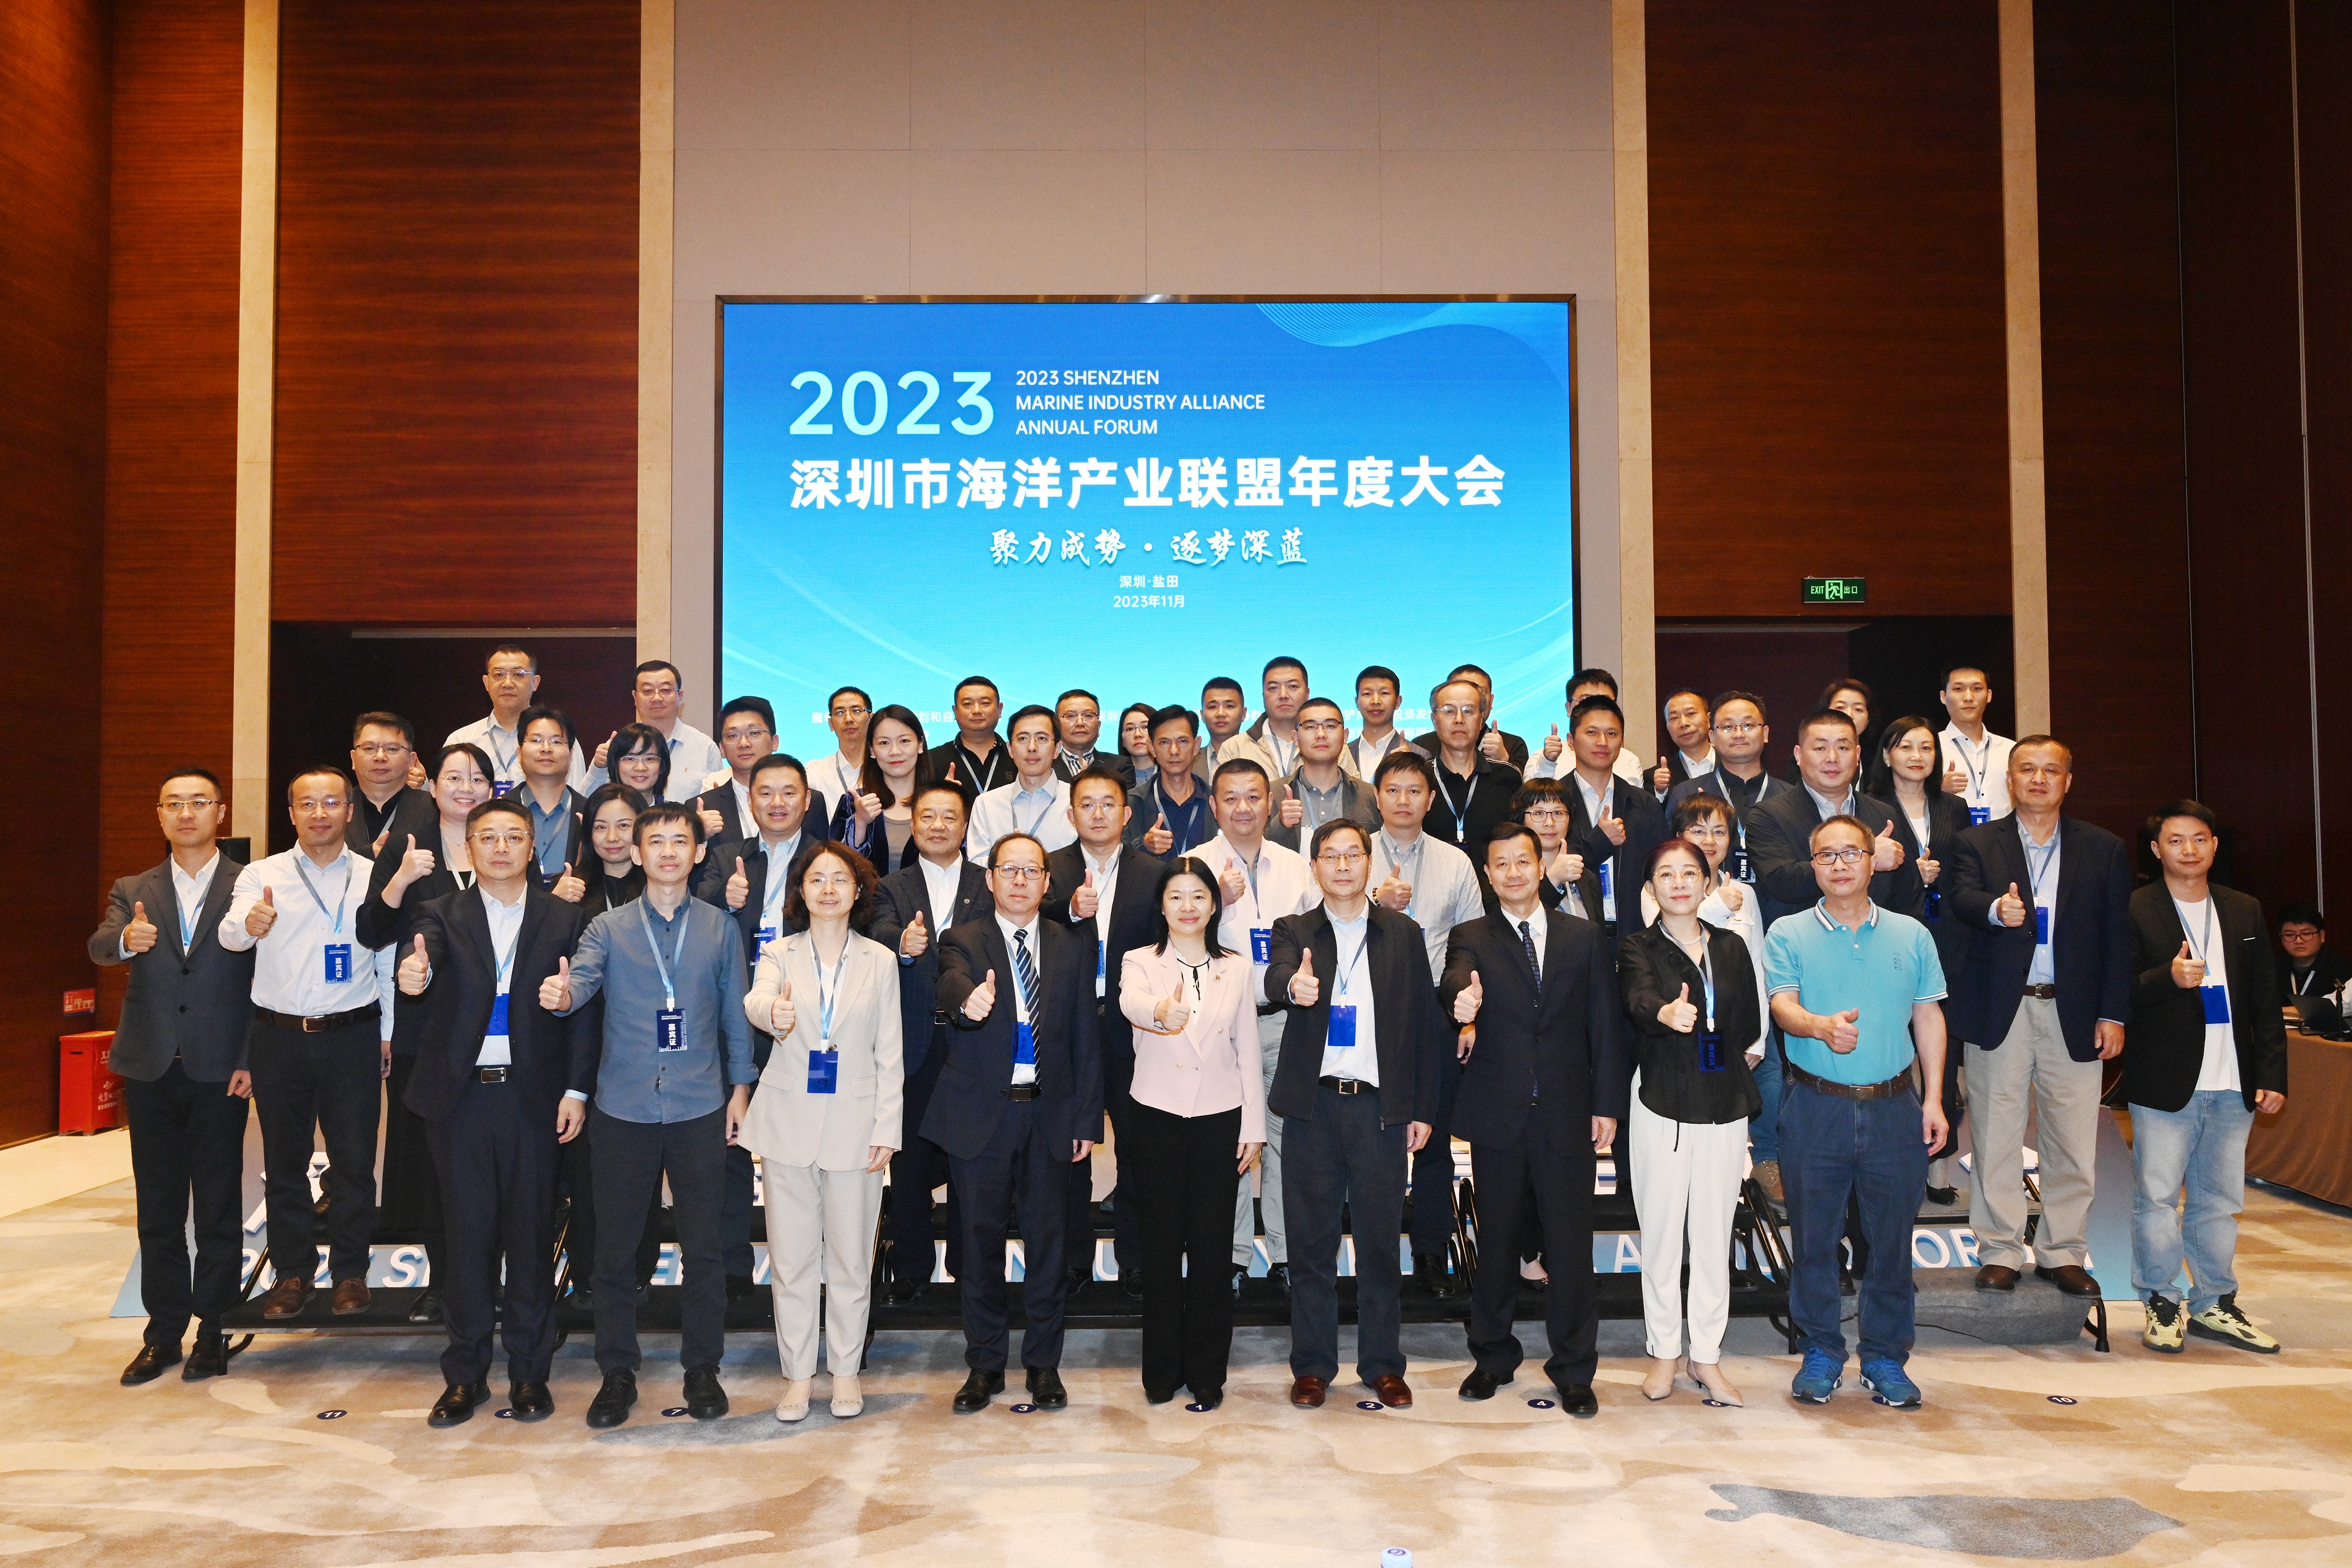 深圳港集团成功举办举办深圳市海洋产业联盟2023年度大会